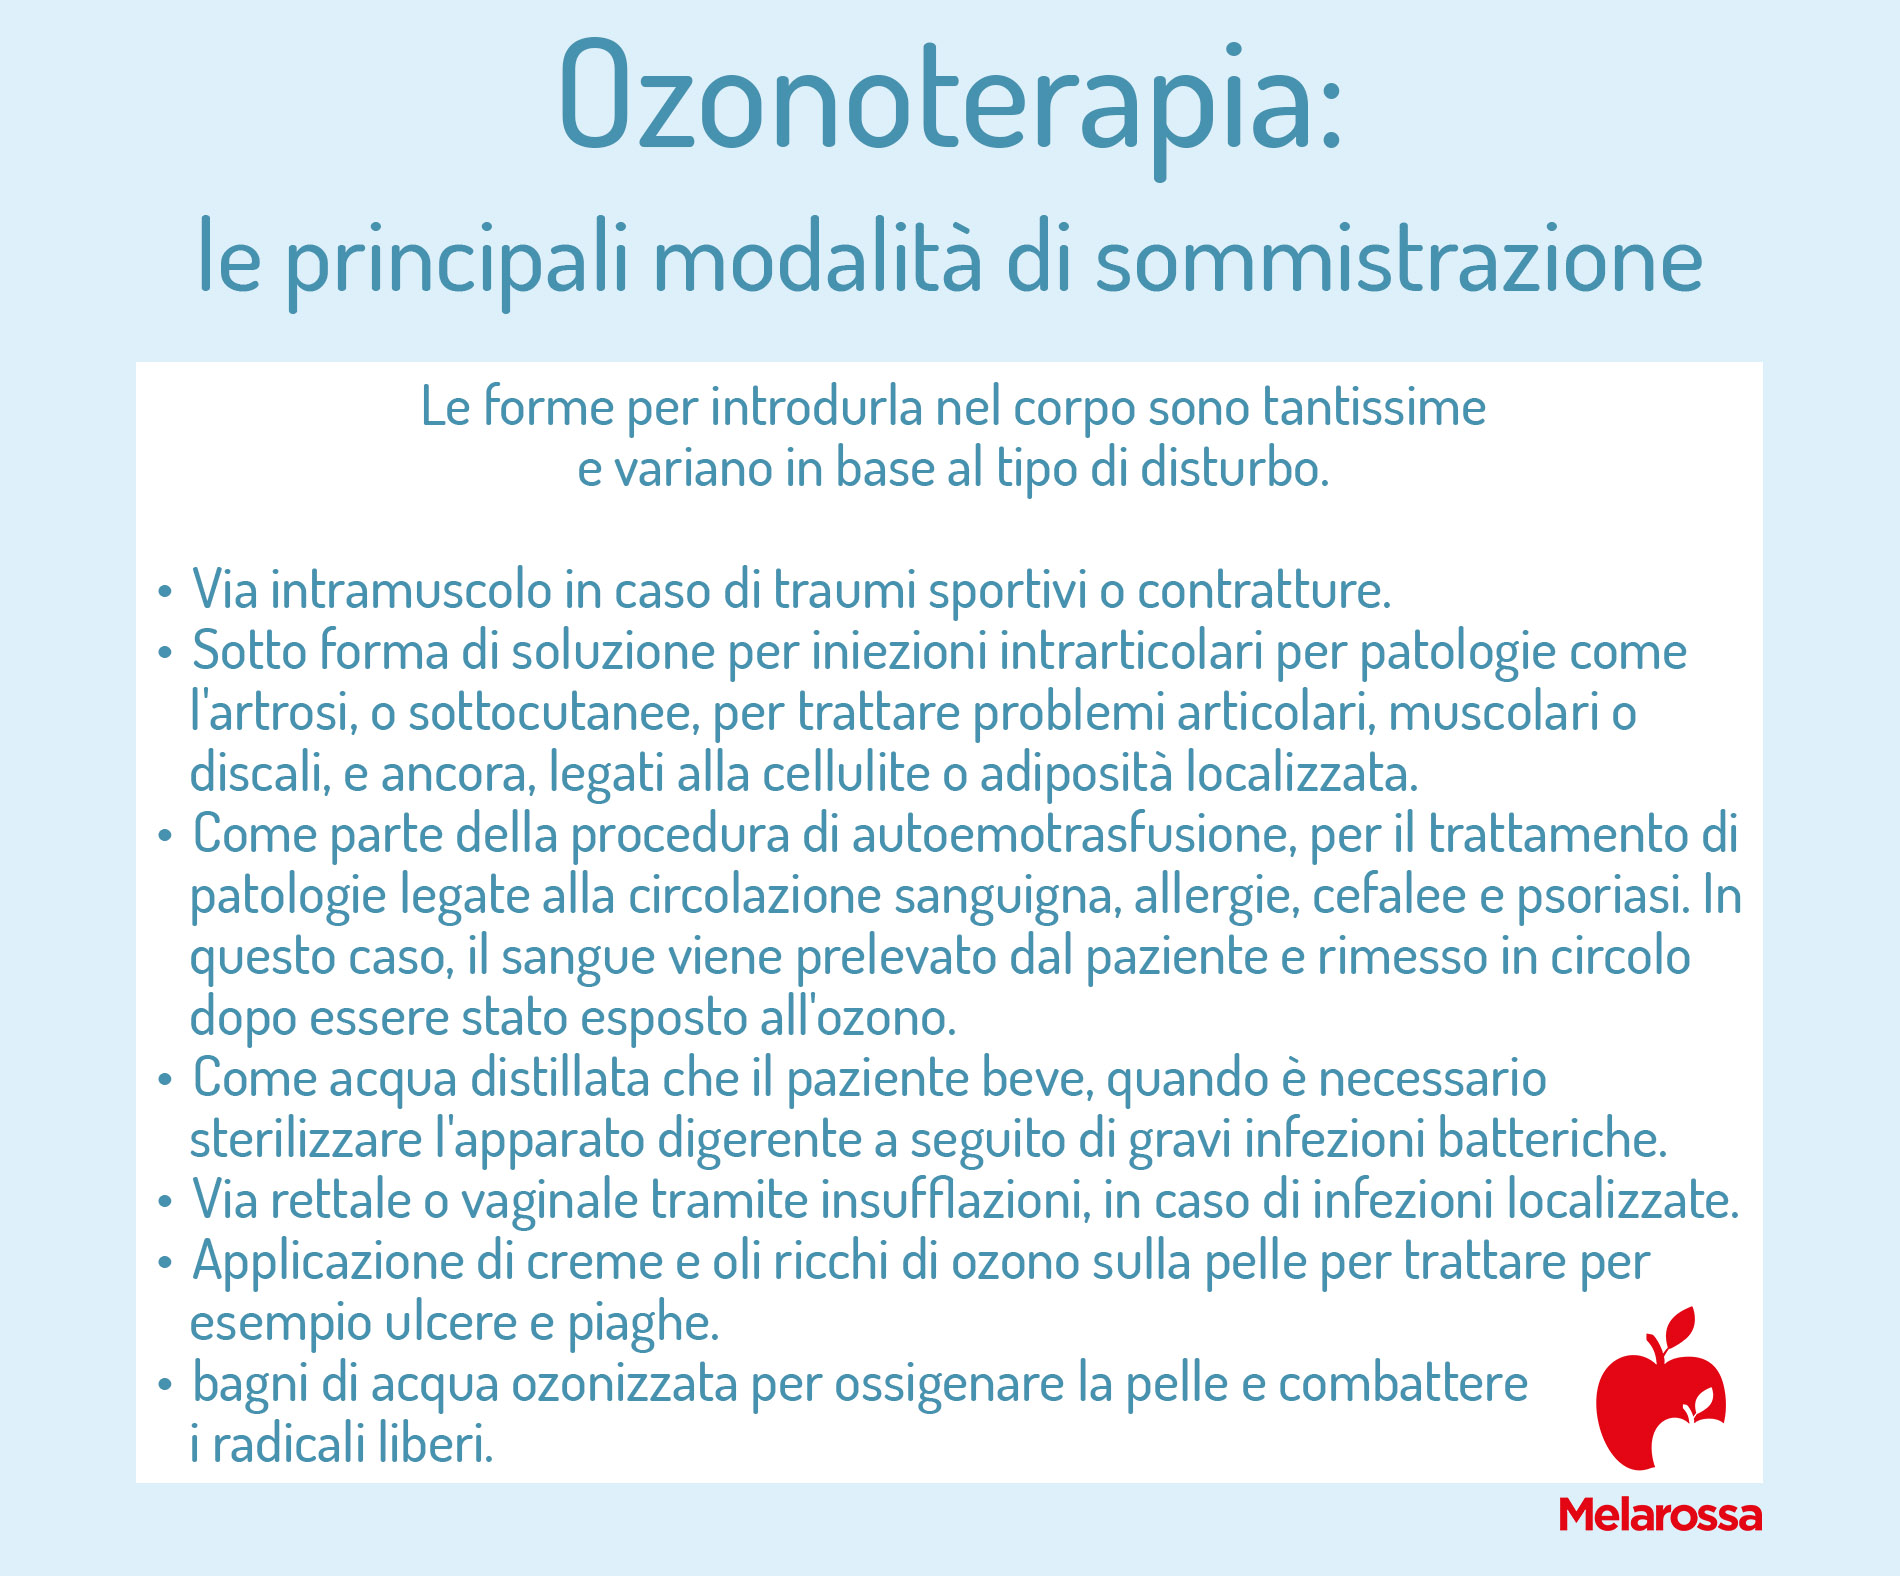 ozonoterapia: modalità di somministrazione